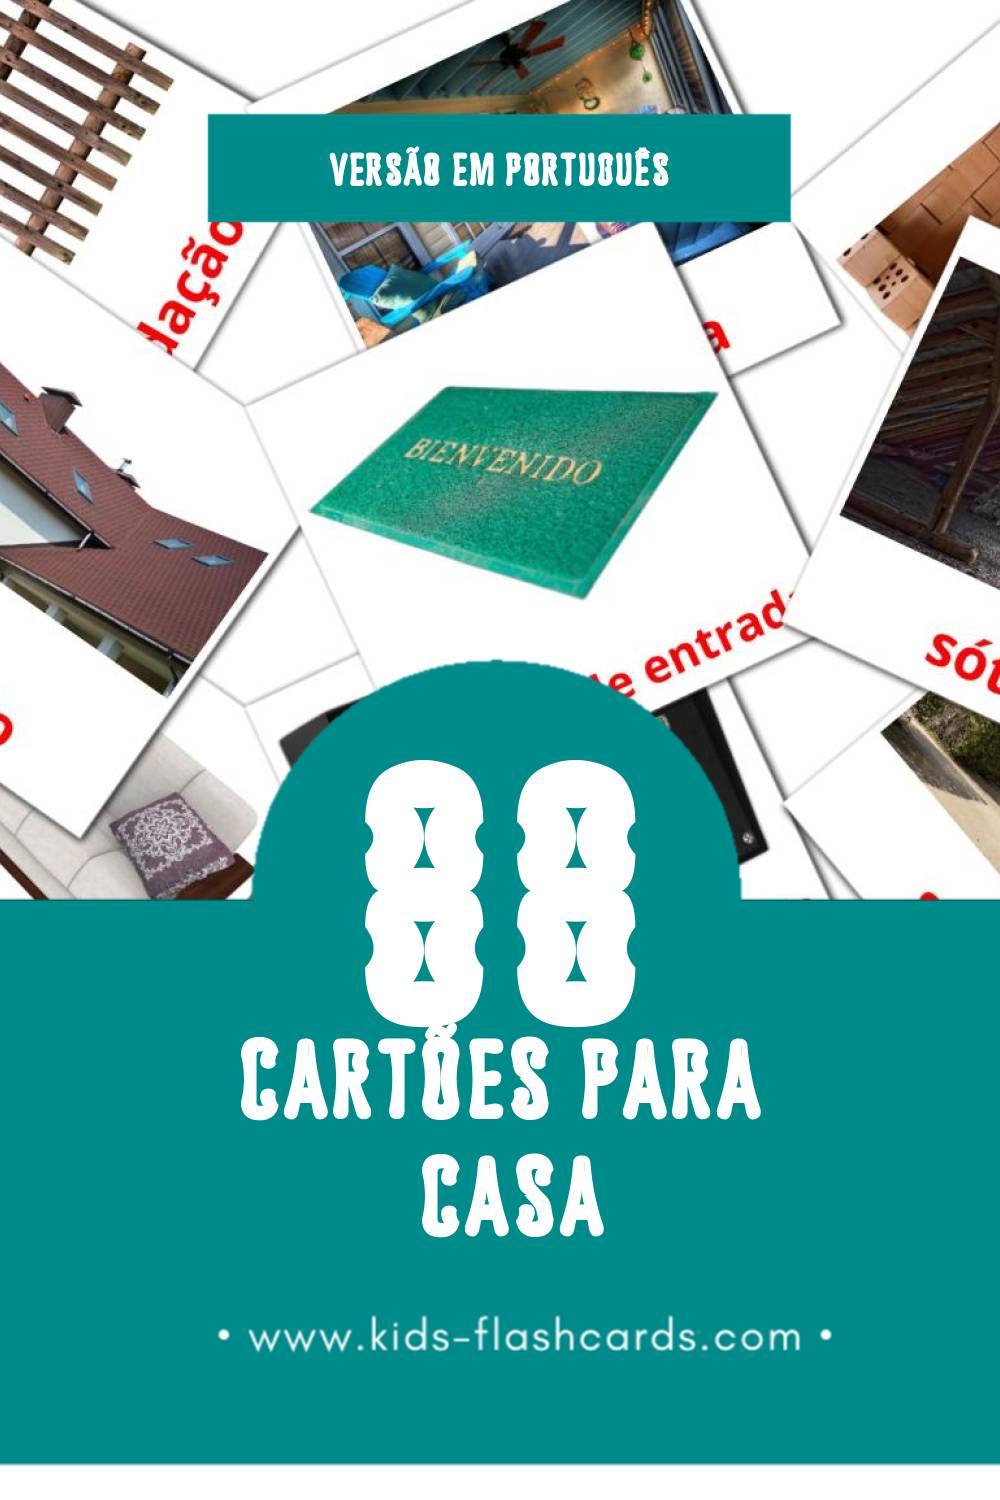 Flashcards de Casa Visuais para Toddlers (91 cartões em Português)